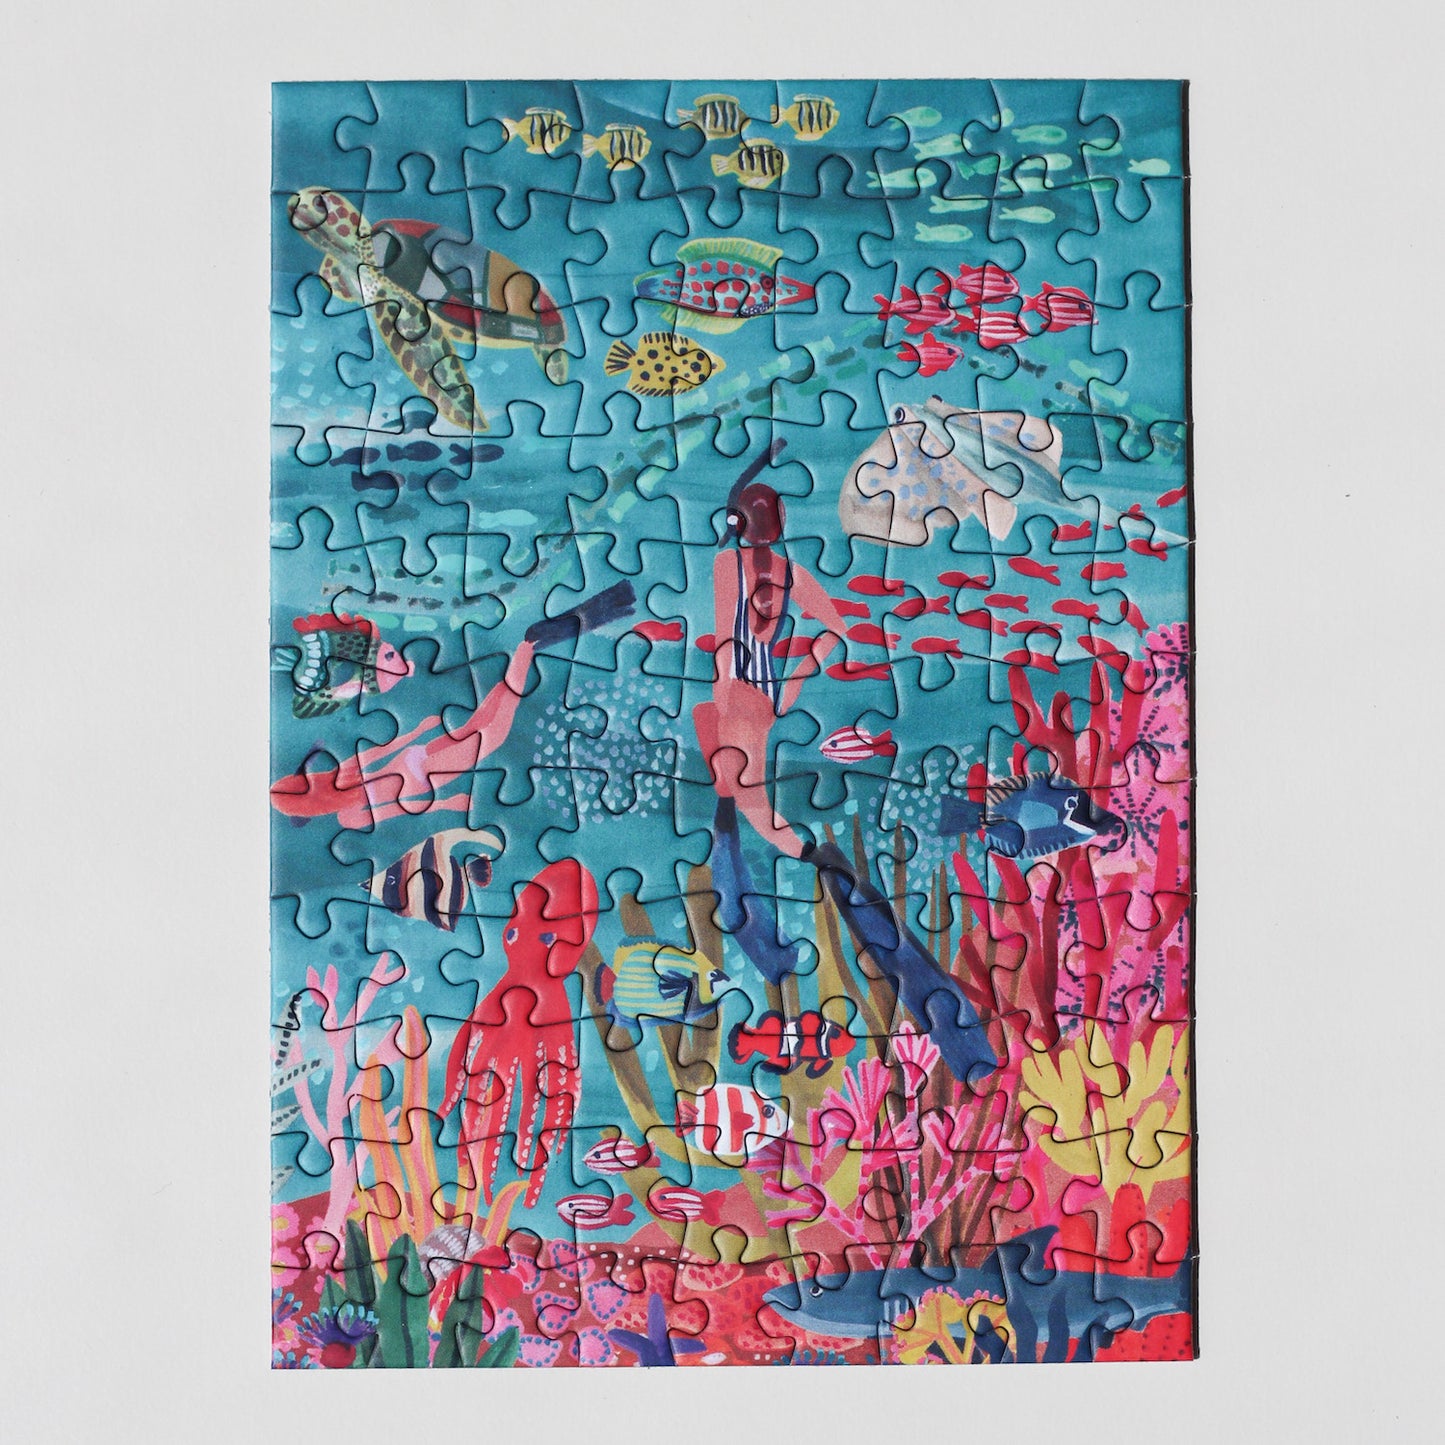 99-teiliges Under The Sea Minipuzzle für Erwachsene, das zwei Frauen beim Schnorcheln im Meer zeigt. Die Frauen sind umgeben von bunten Fischen, einem Oktopus, einem Rochen, einer Schildkröte und einem Hai. 